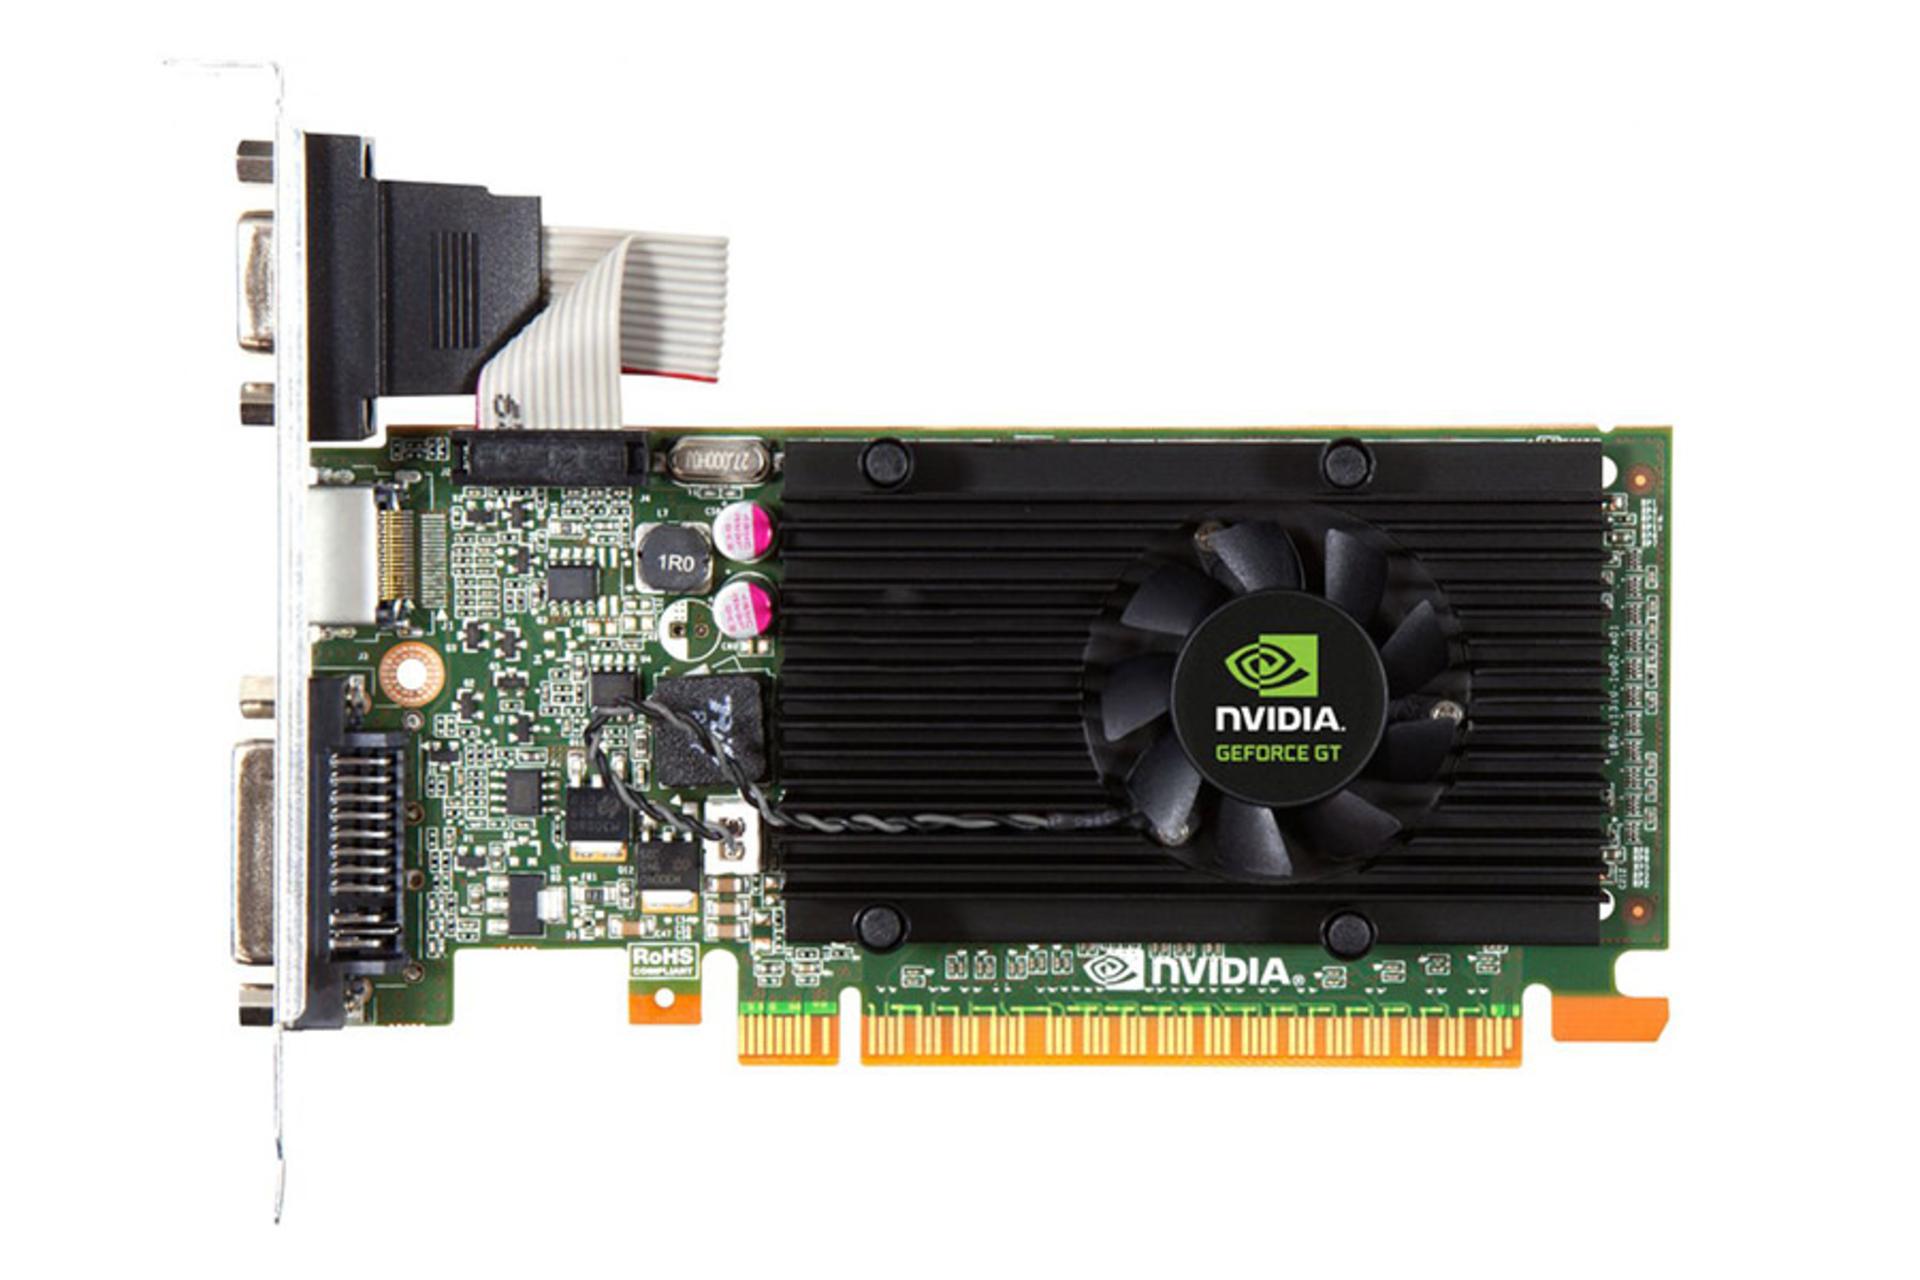 مرجع متخصصين ايران Nvidia GeForce GT 610 / جي فورس جي تي ۶۱۰ انويديا